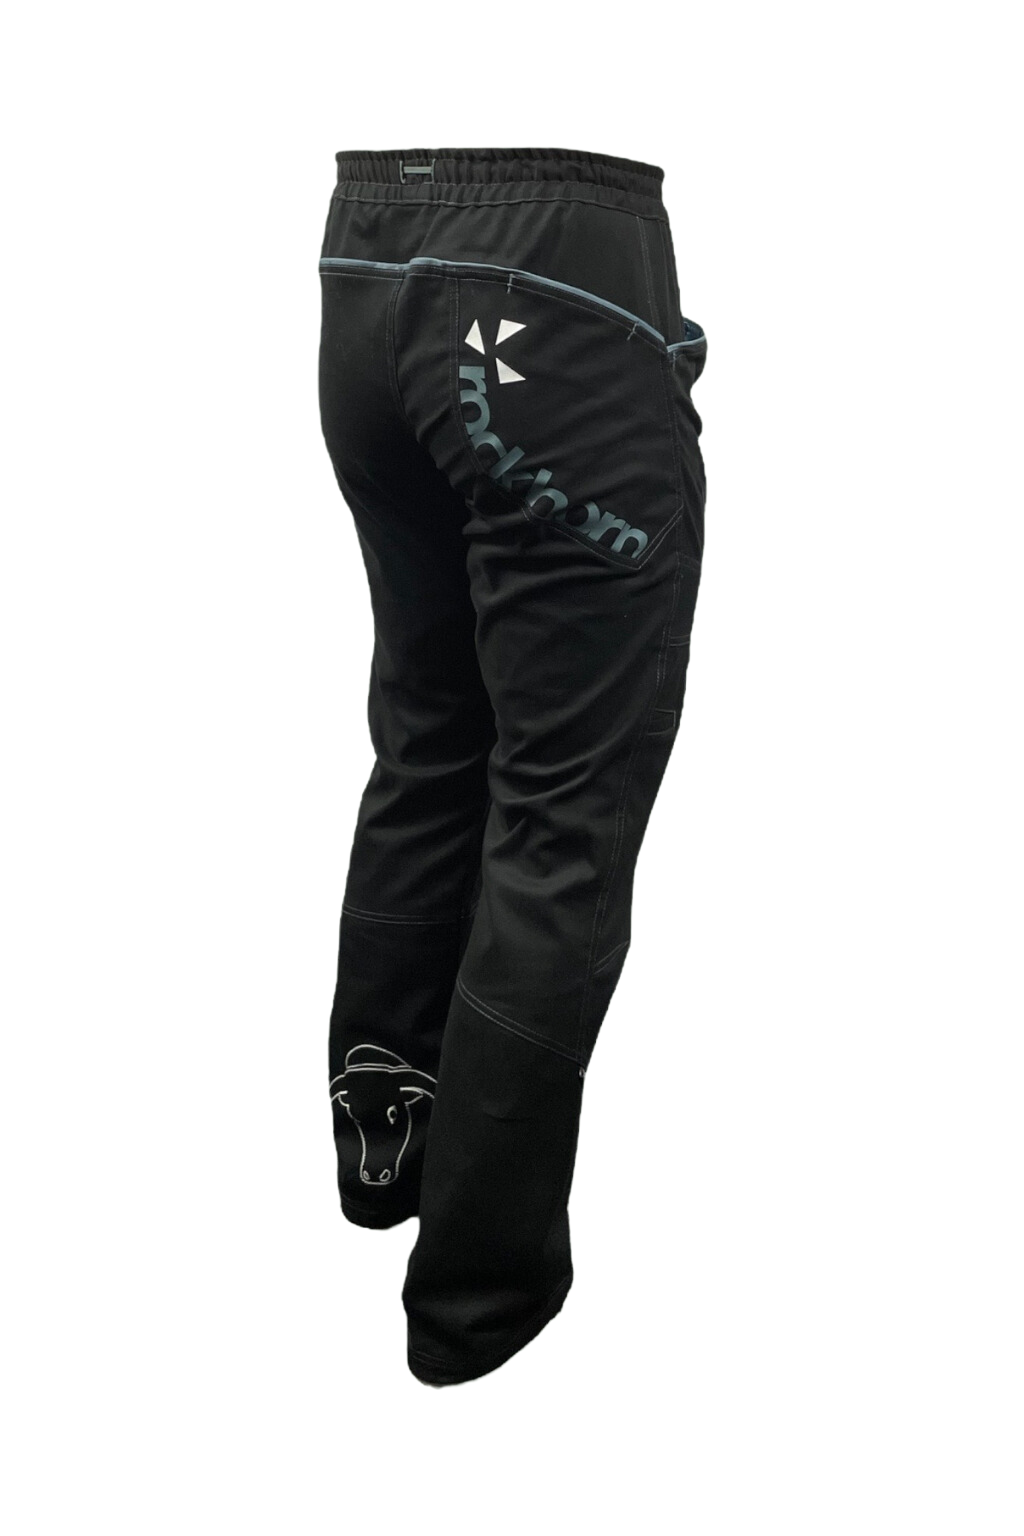 pánské kalhoty UNIVERSITY NEW / černé KALHOTY: XS